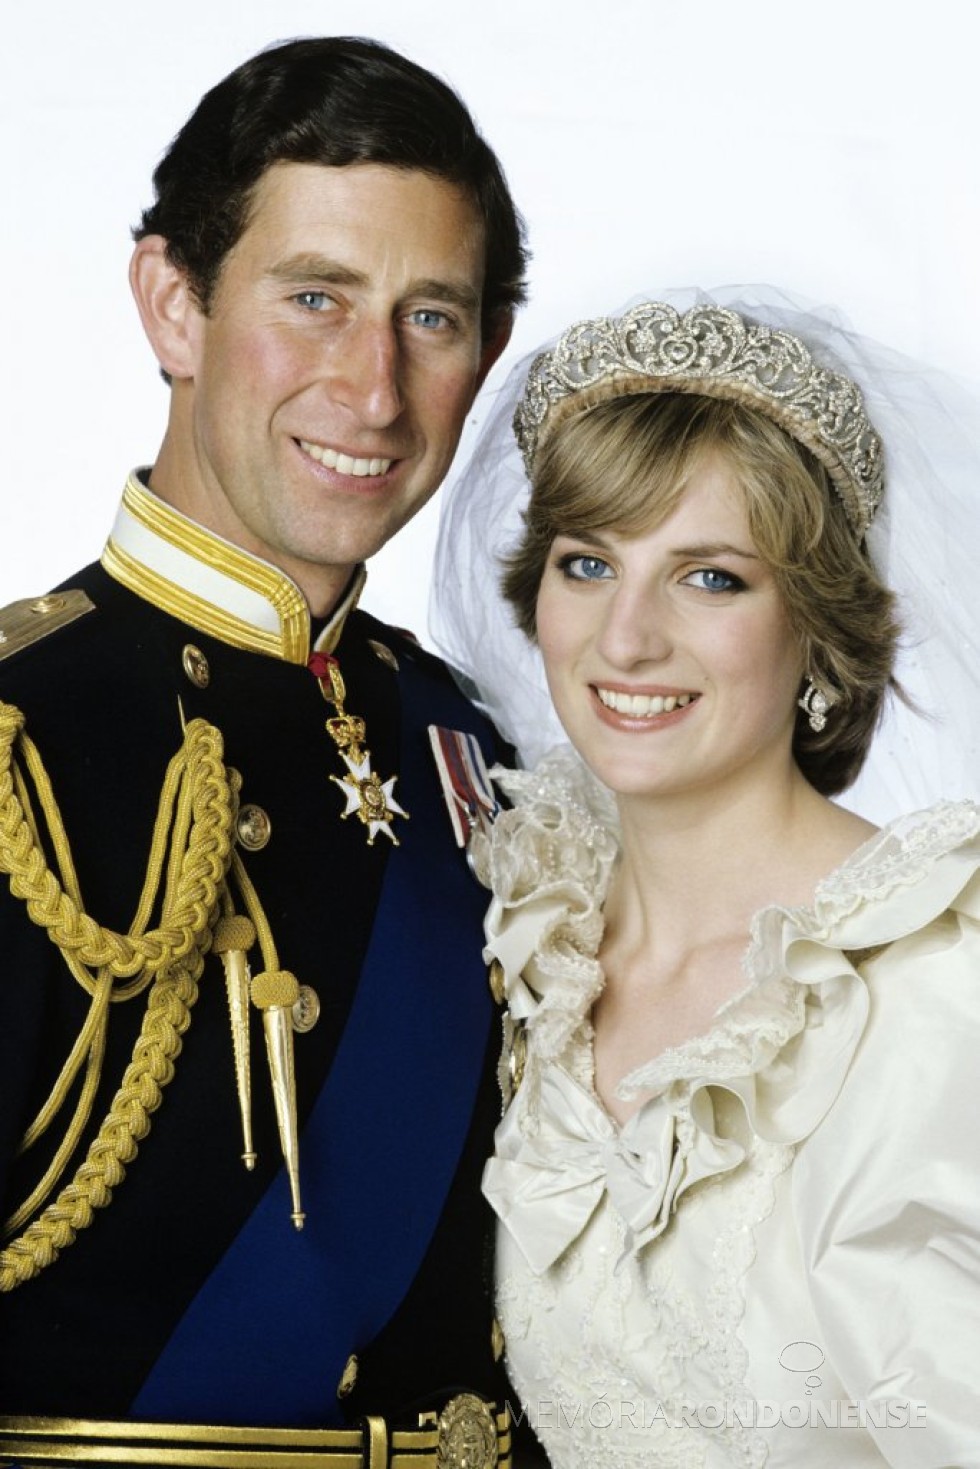 Principe Charles e Diana Spencer, em uma das fotos oficiais de seu casamento. 
Imagem: Acervo People - FOTO 6 -  